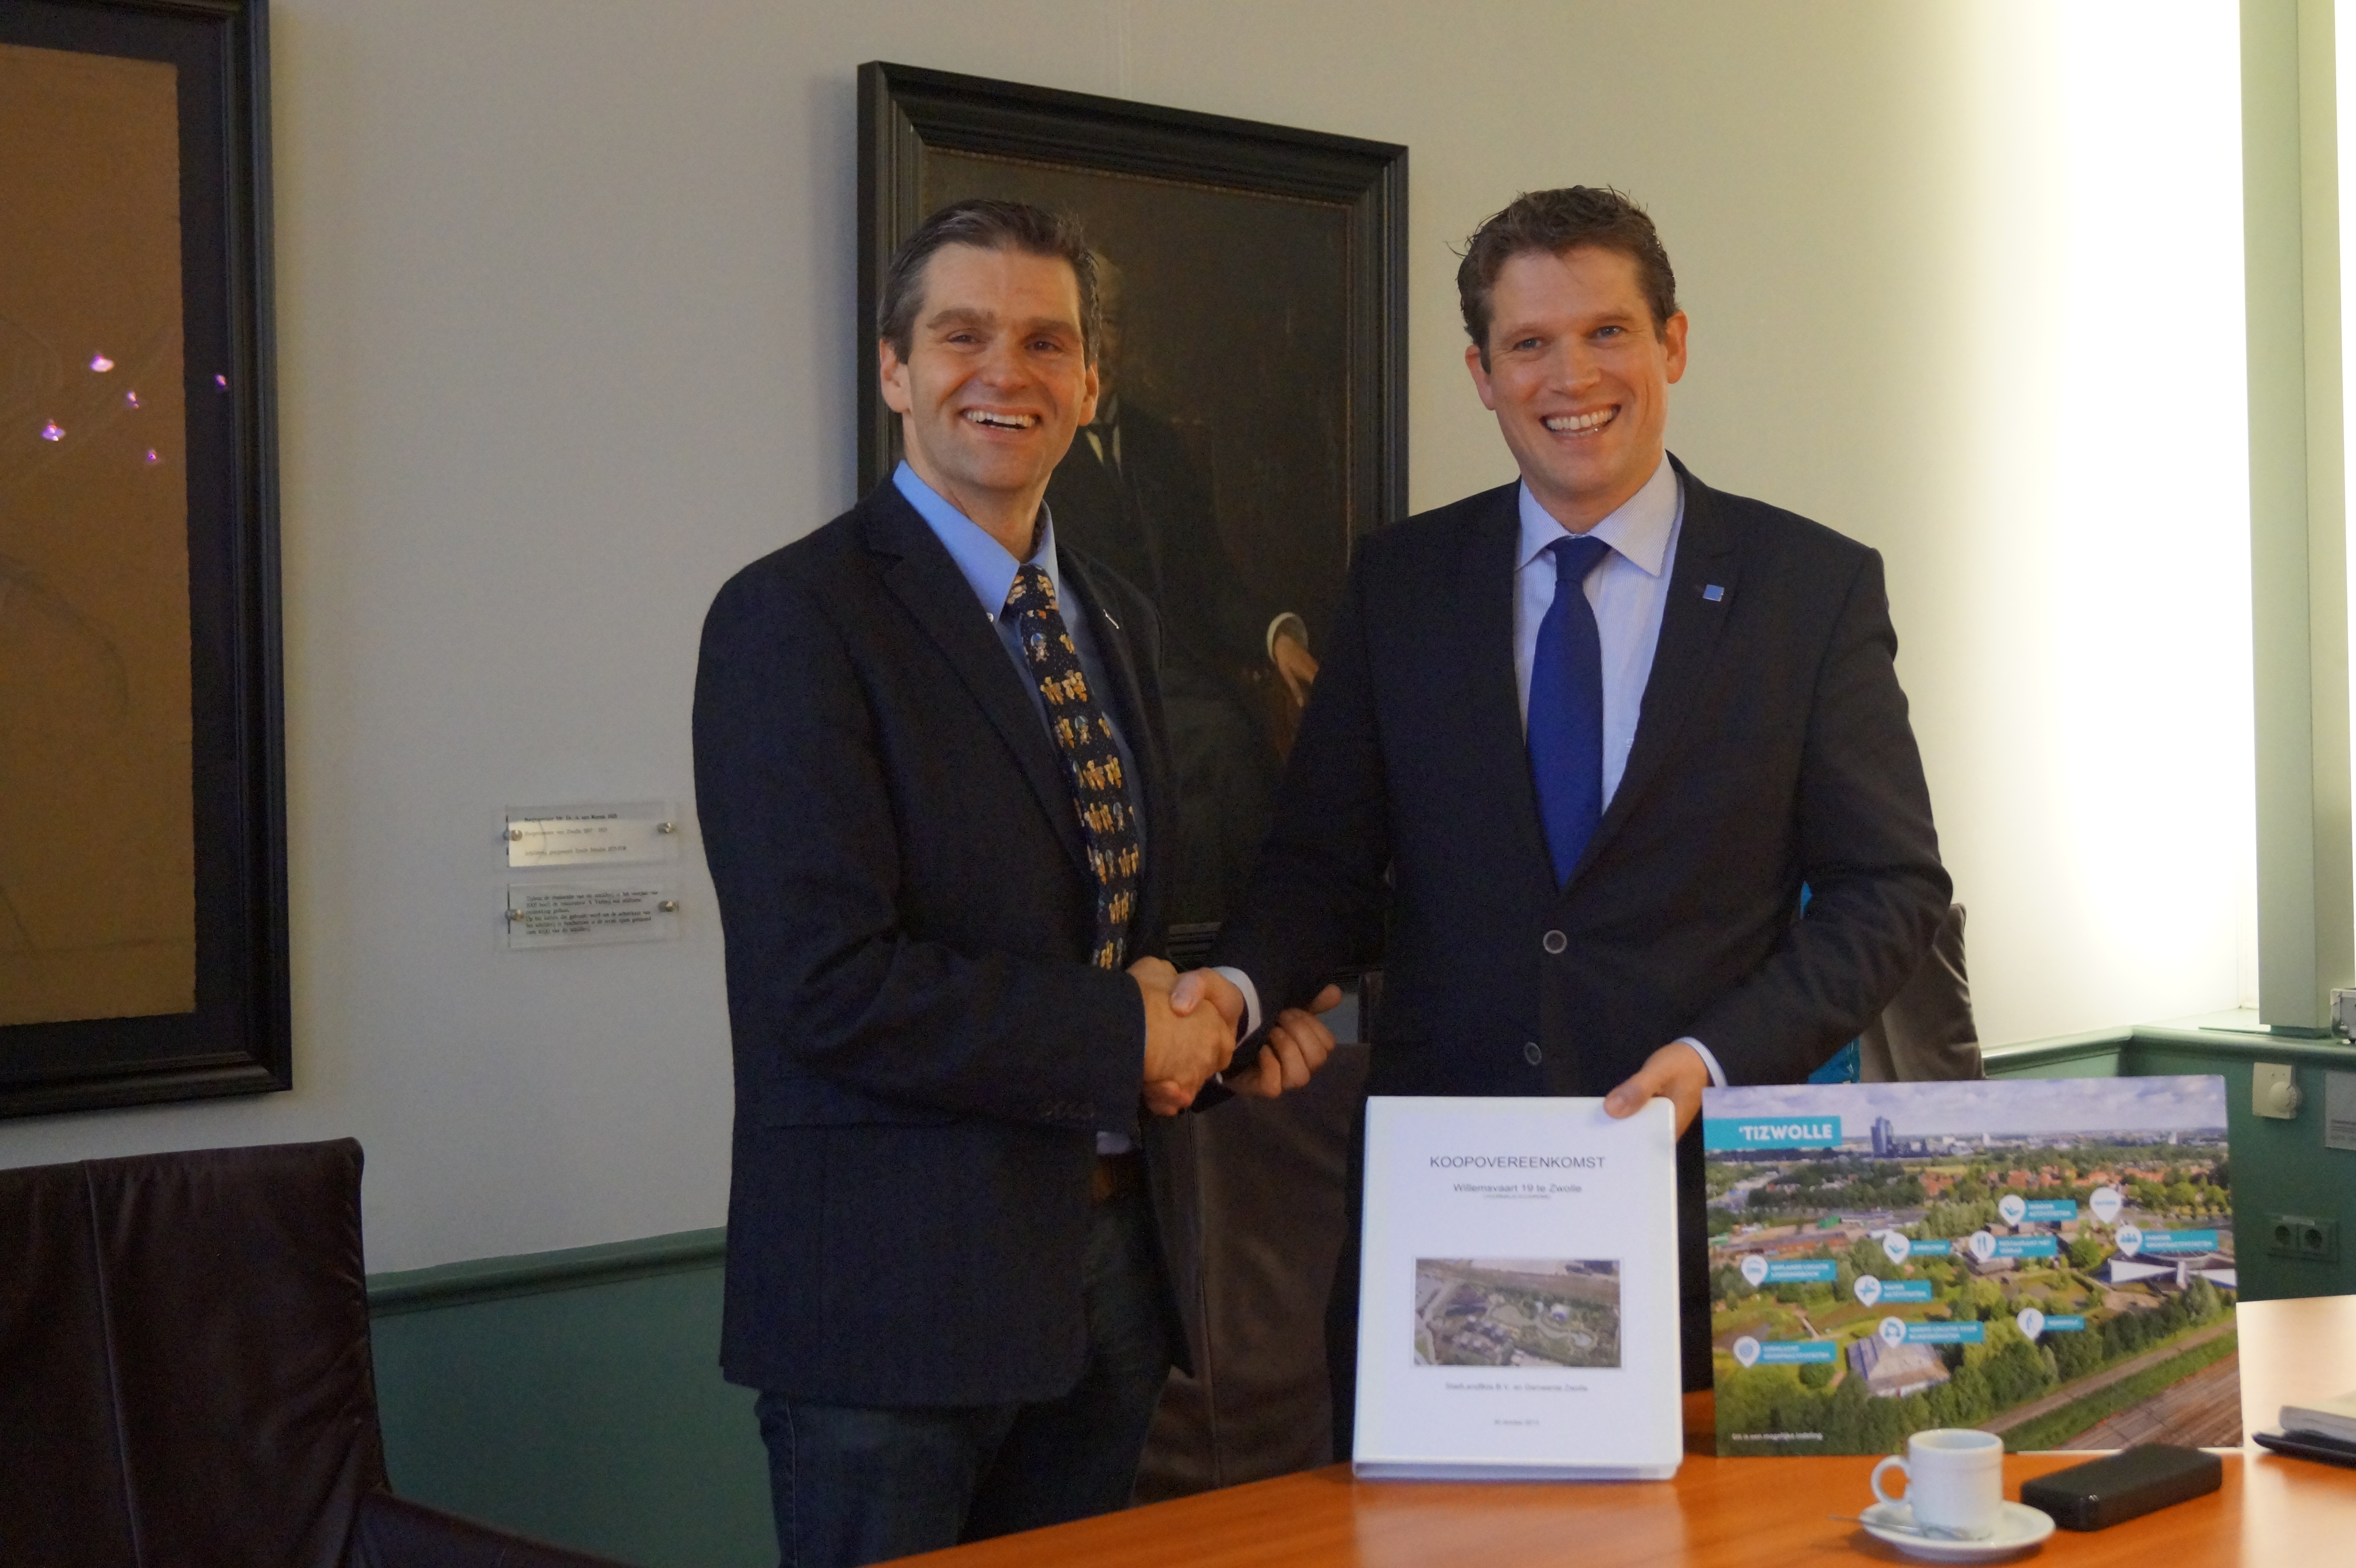 De ondertekening van het contract door wethouder René de Heer (rechts) en directeur Martyn Besselsen (links)